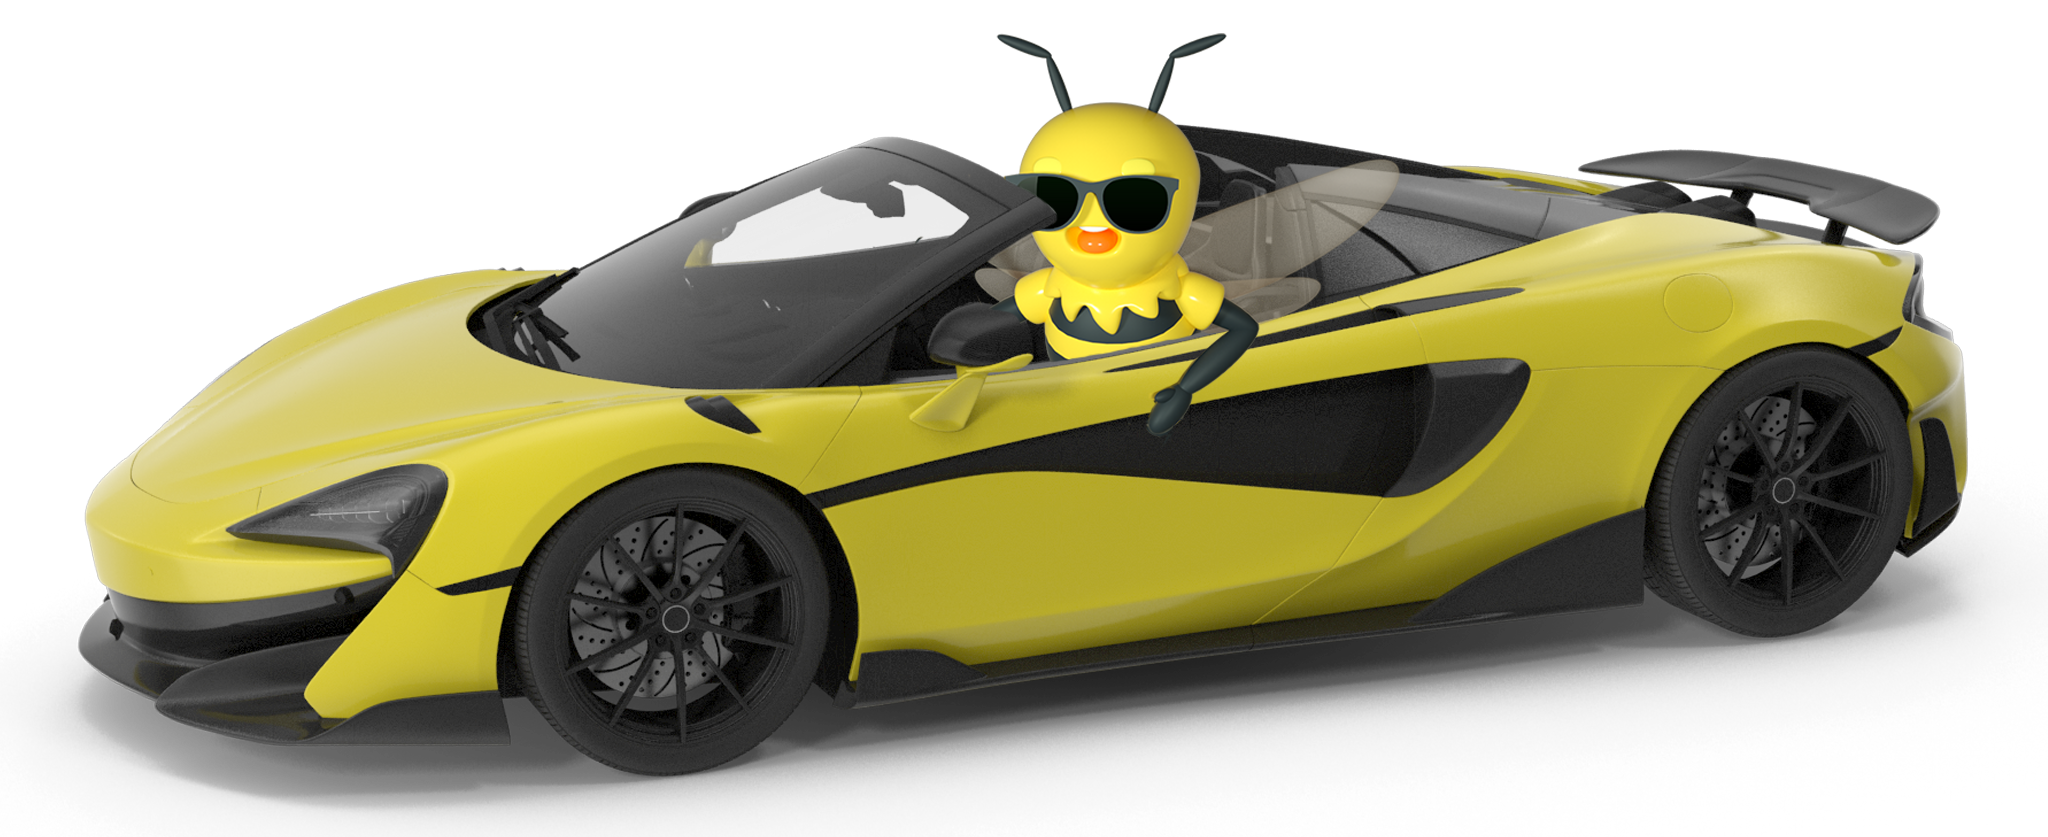 Buzzy Sports Car-1